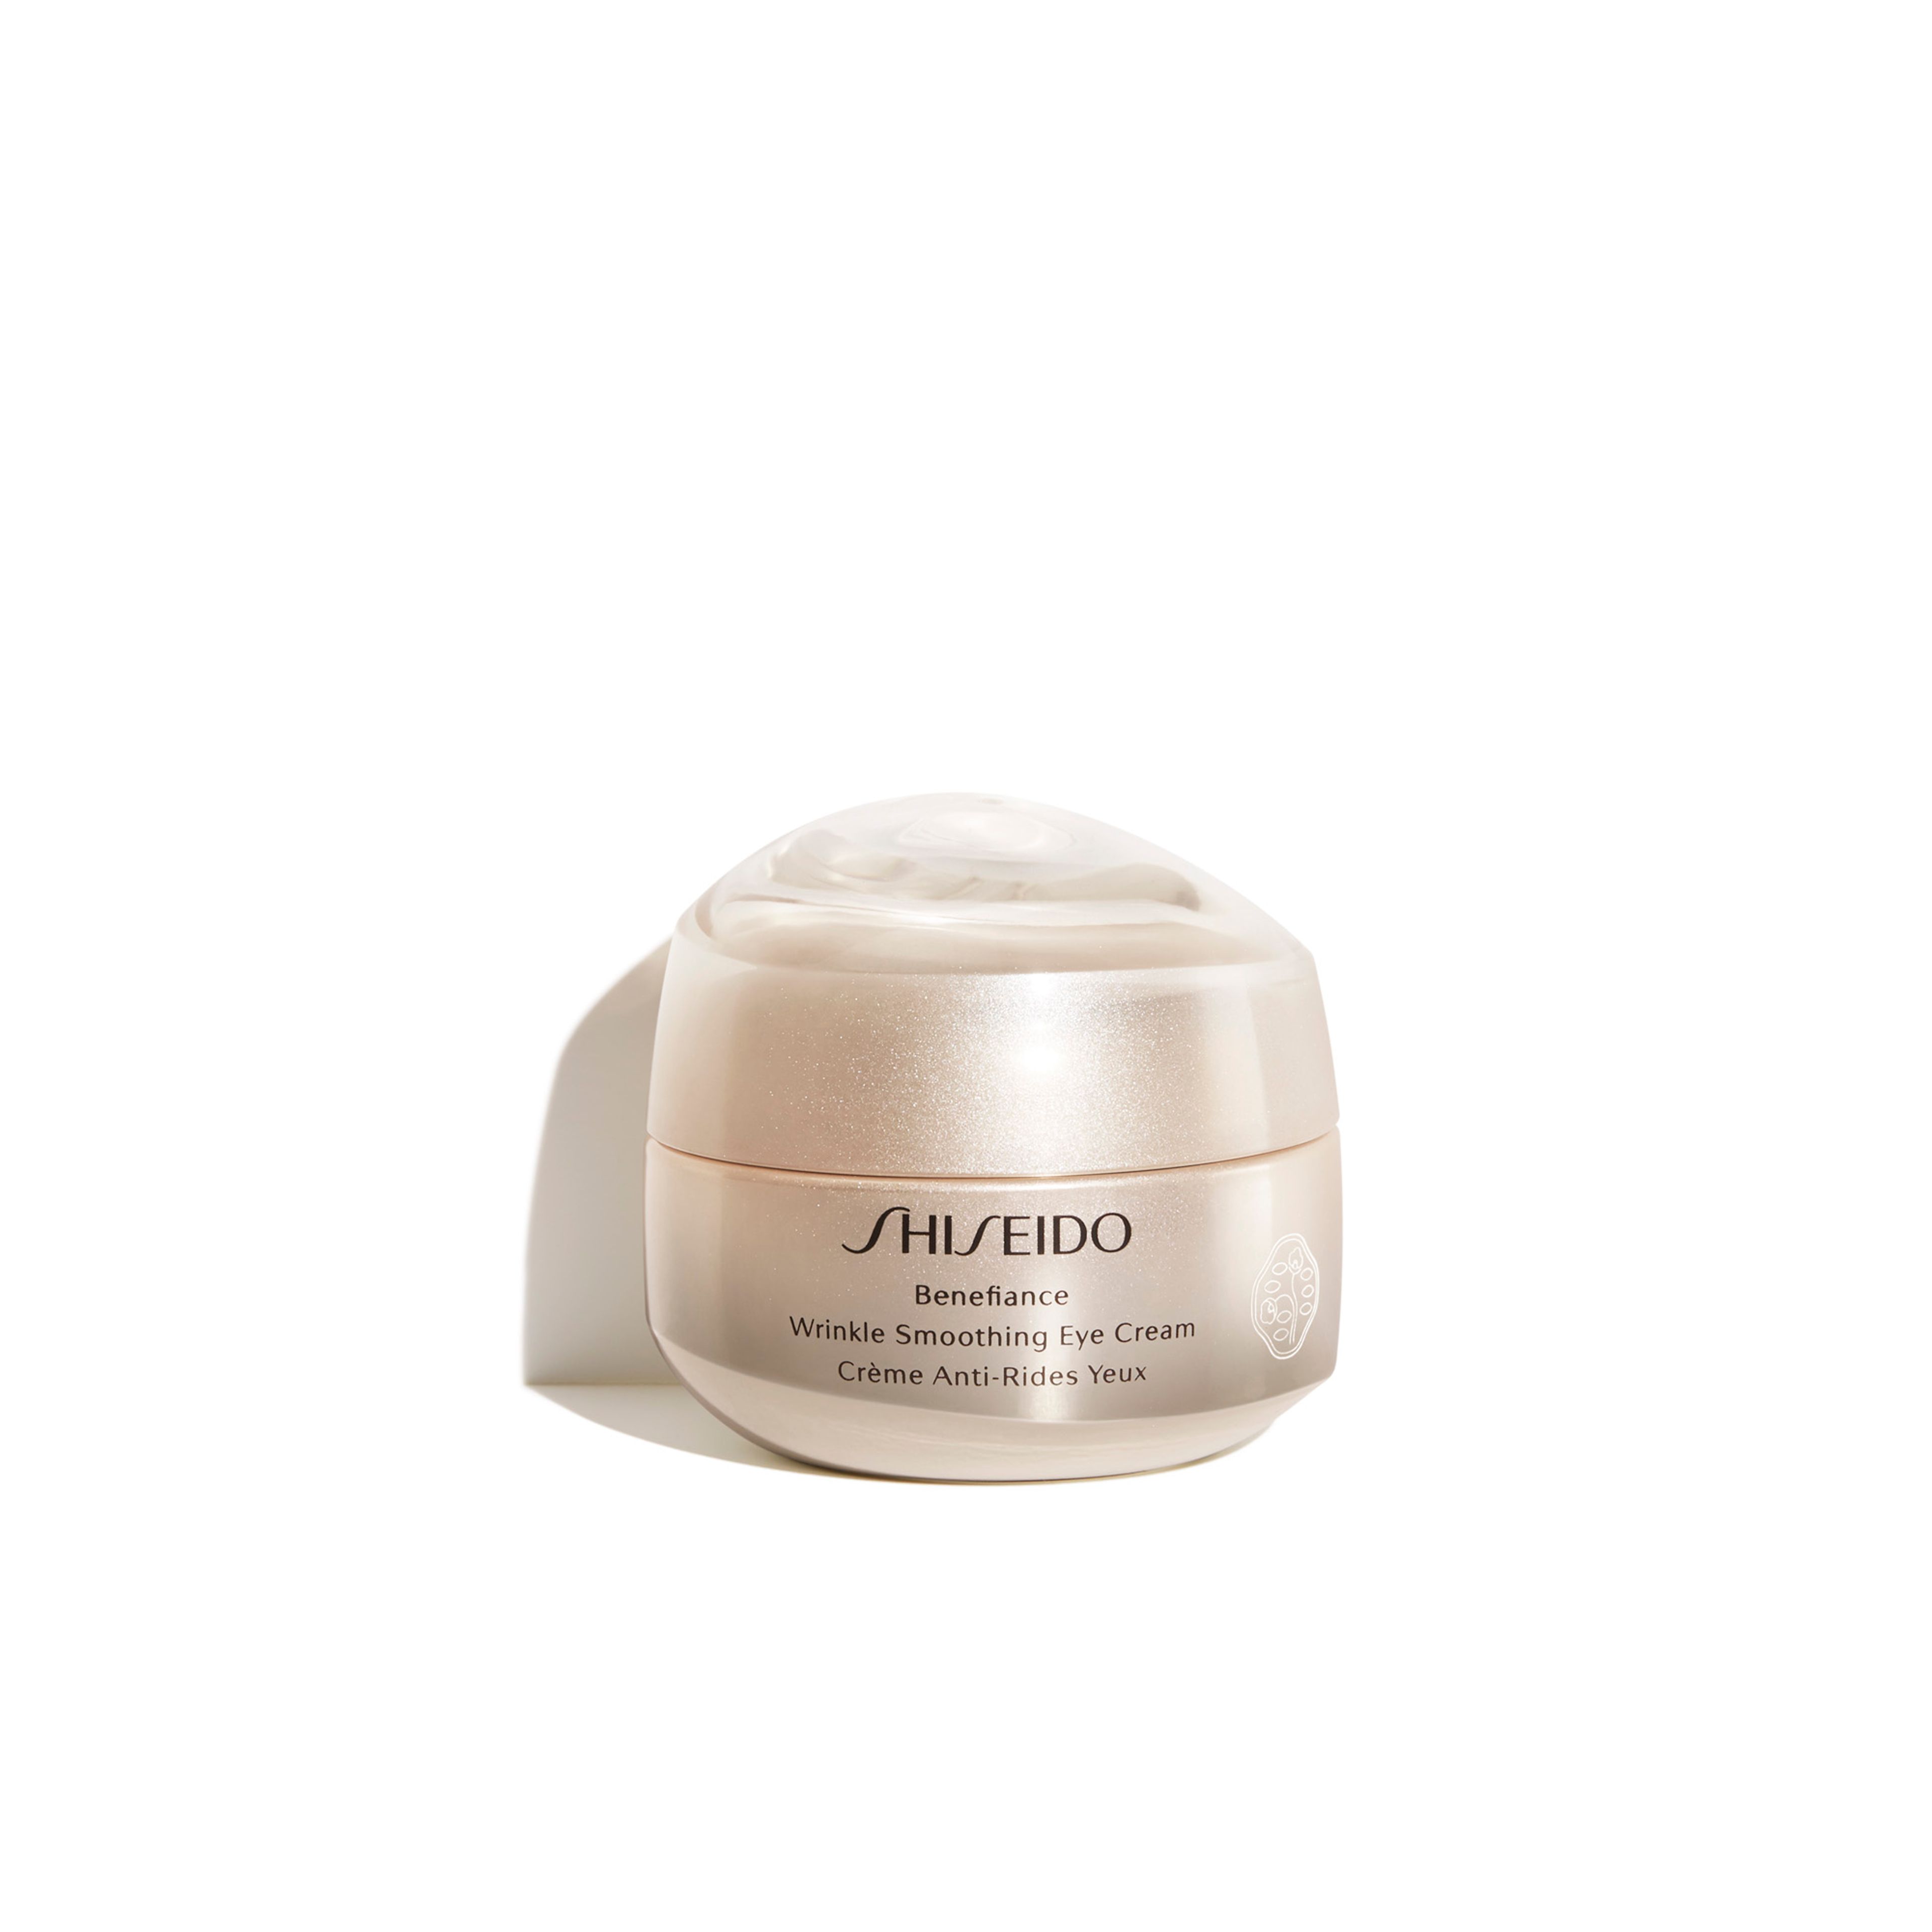 Shiseido Wrinkle Smoothing Eye Cream 1